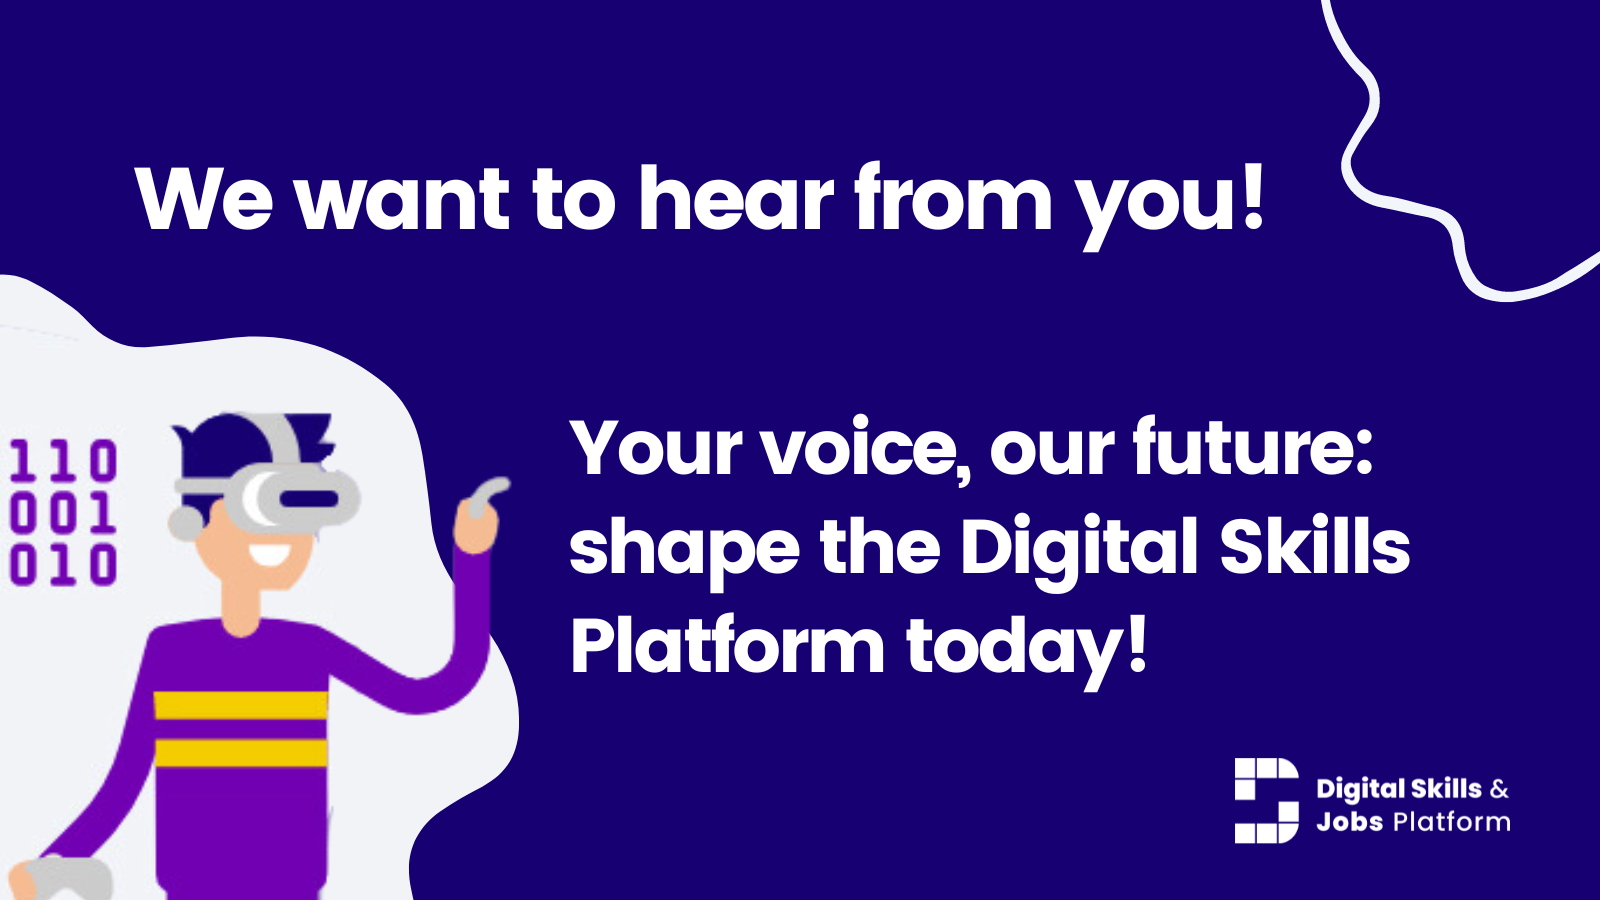 Promotion de l’enquête auprès des utilisateurs: "Nous voulons vous entendre rom! Votre voix, notre avenir: shape de Platform aujourd'hui!"